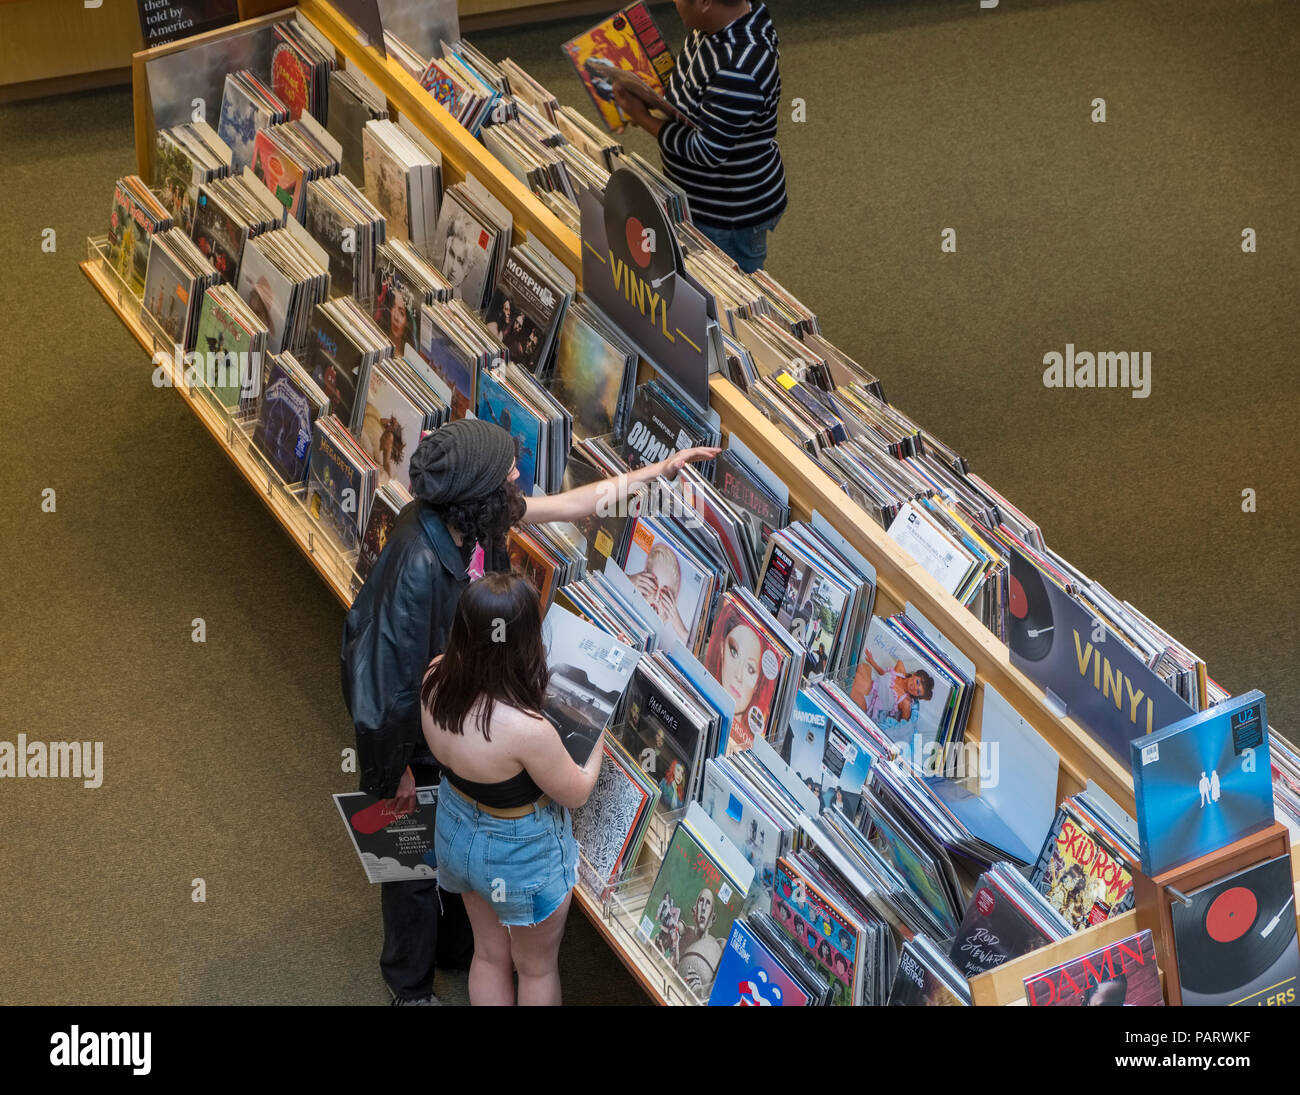 Menschen surfen Schallplatten und Alben in den Regalen in einem Record Shop Shop Interieur in Los Angeles, Los Angeles, Kalifornien, USA Stockfoto